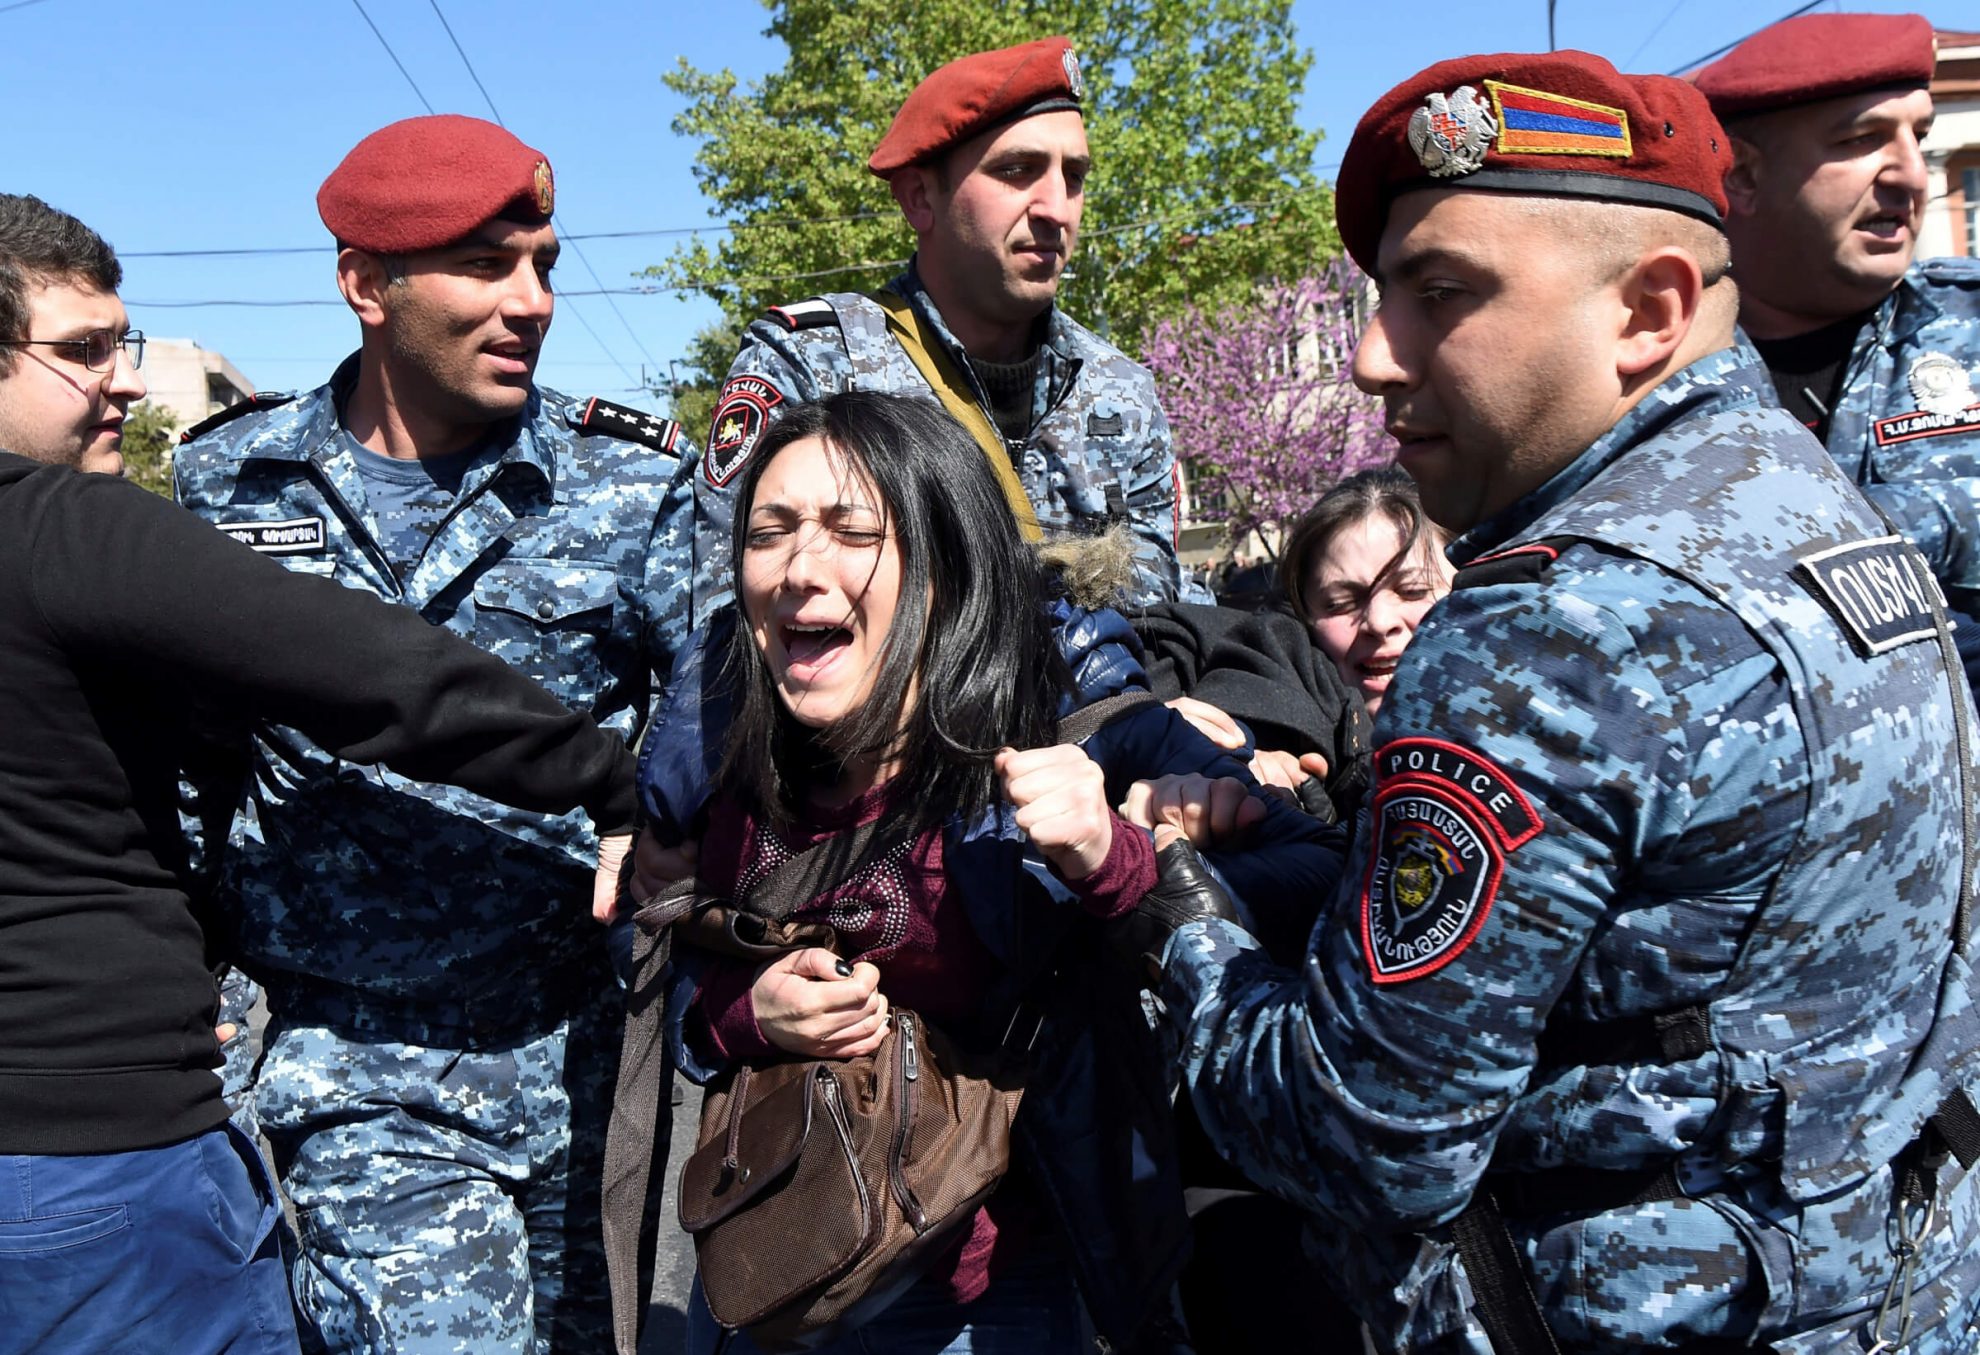 Armėnijos parlamentarai šiandien turi išrinkti naują ministrą pirmininką, todėl į gatves išėjo tiek protestuotojai, tiek specialiosios pajėgos.